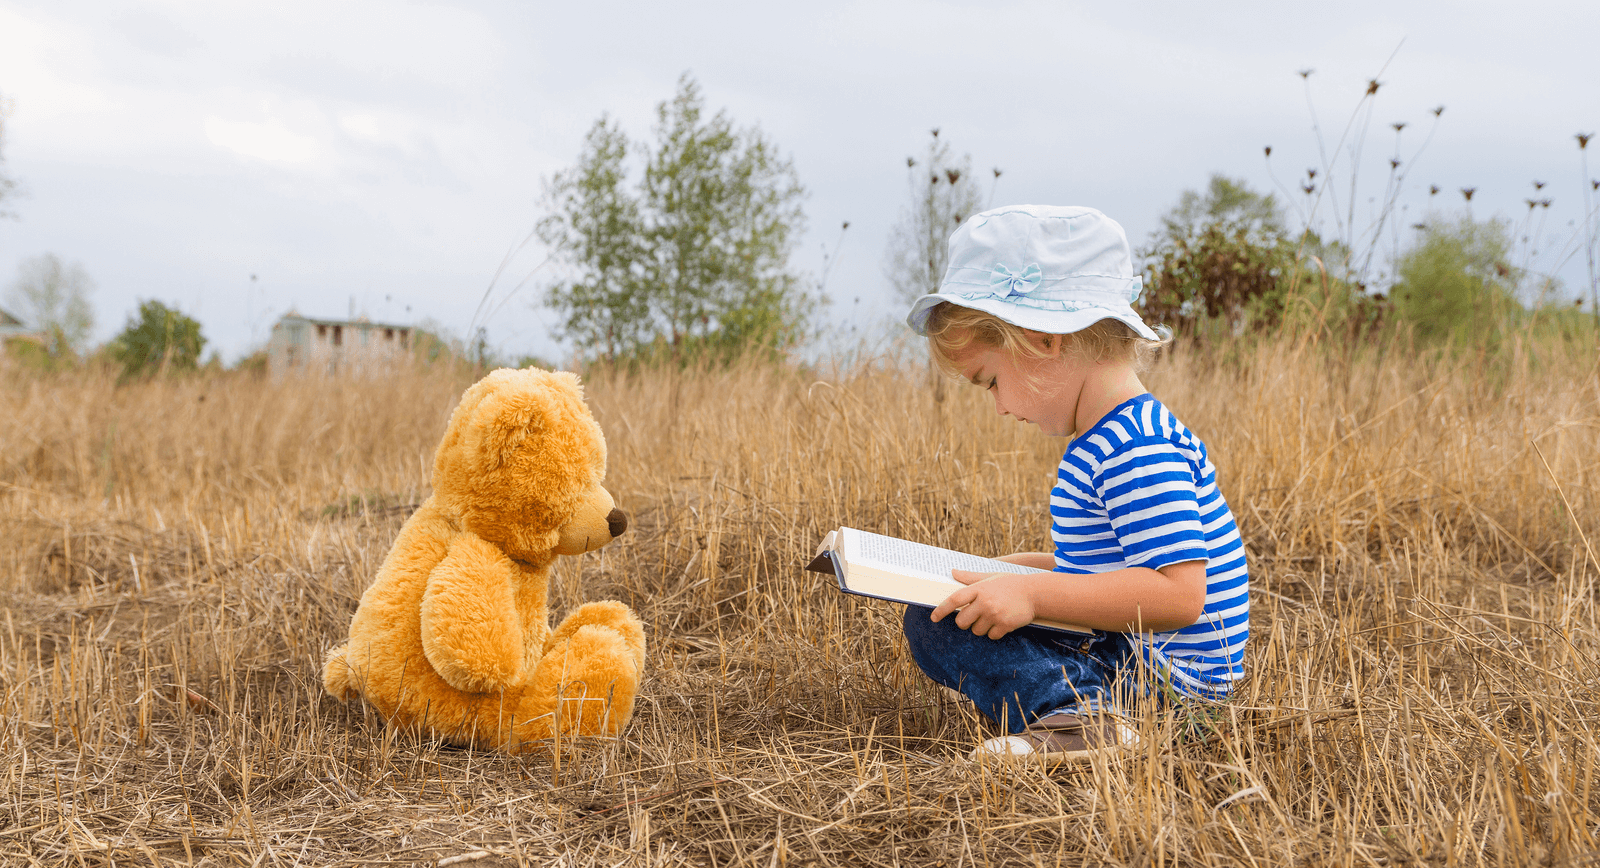 img 1: “Bimba legge un libro, seduta di fronte al suo orsacchiotto”